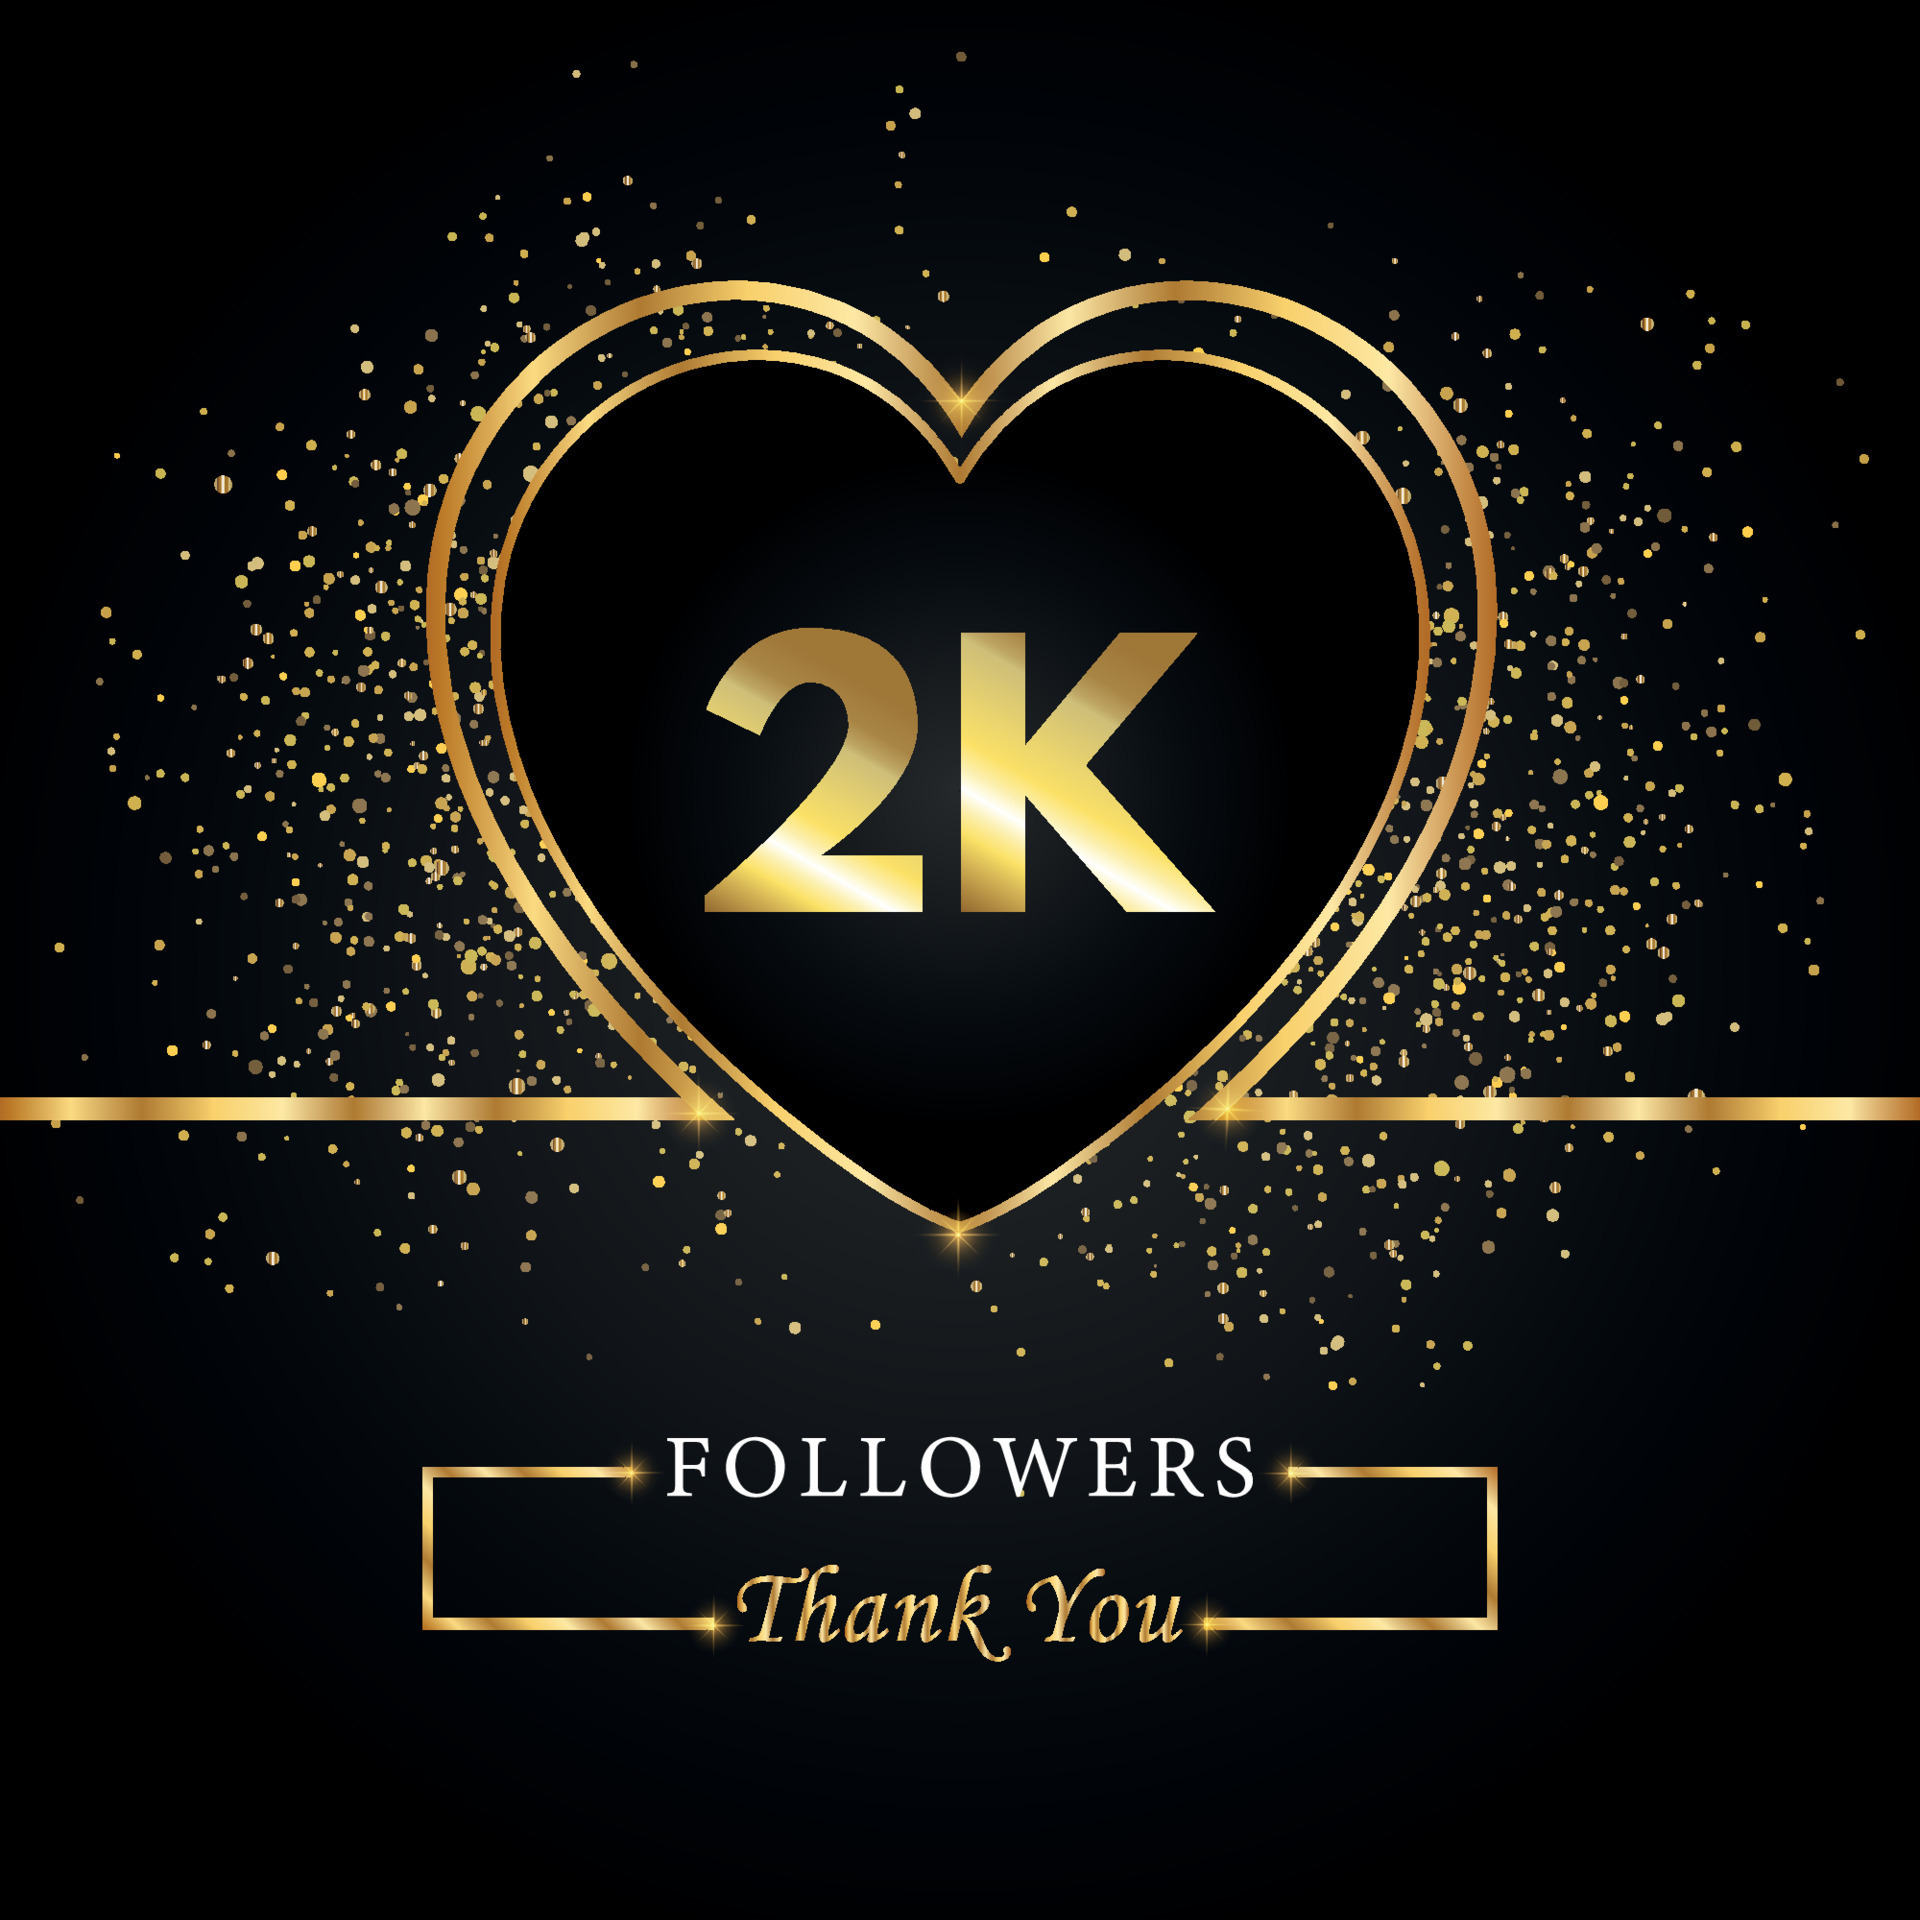 Cảm ơn 2K - Hình ảnh đầy ý nghĩa chào đón xu hướng mới. Sự thành công của chúng mình không thể thiếu những người ủng hộ và khách hàng tuyệt vời như bạn đó. Cảm ơn 2K lần nữa!